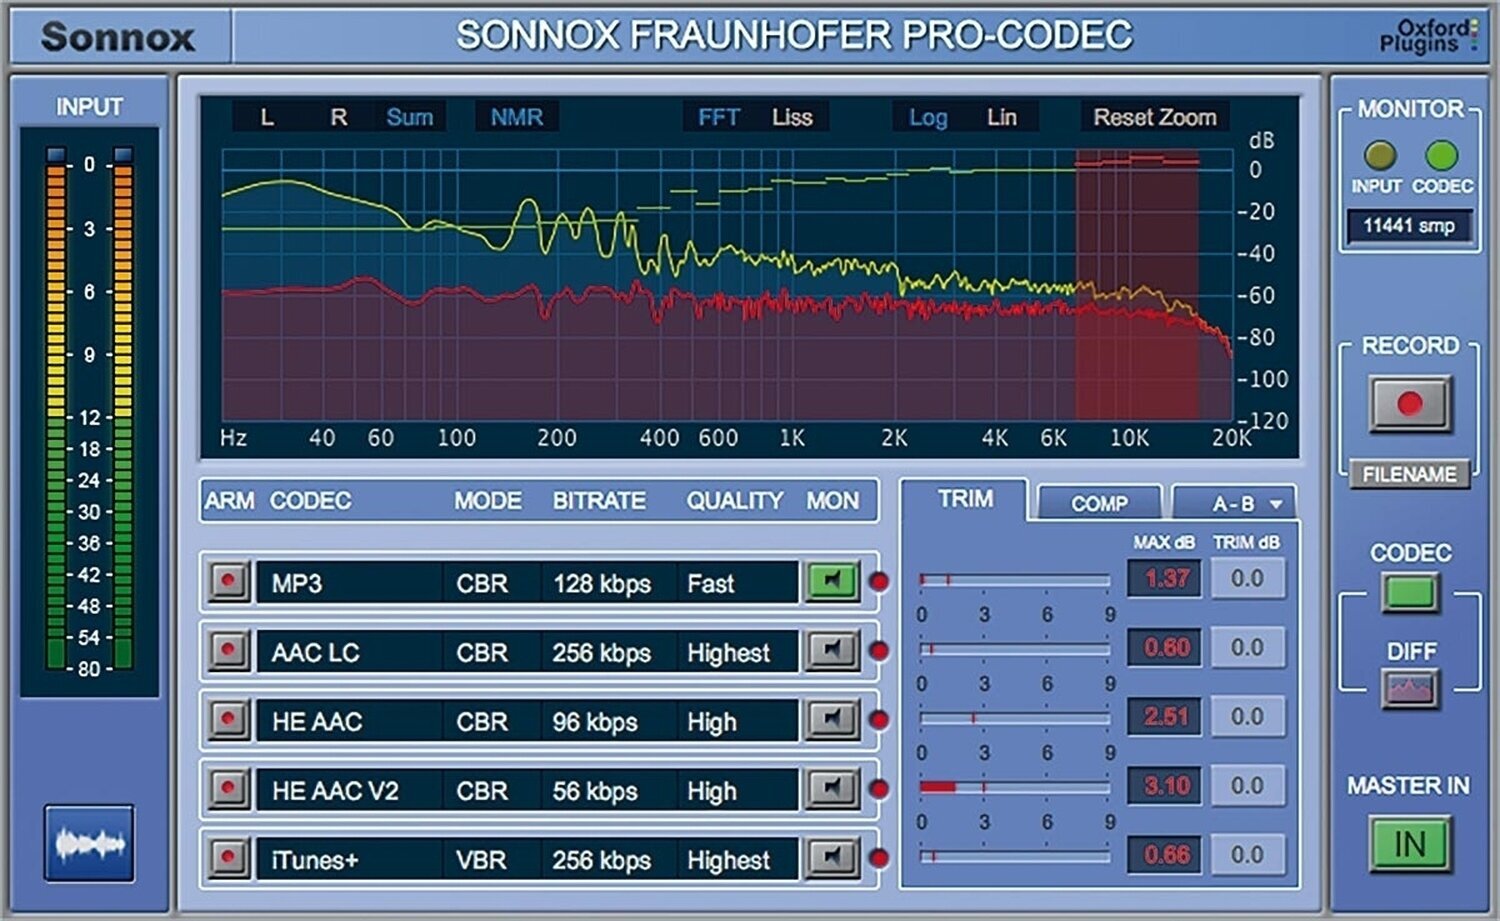 Software Plug-In FX-processor Sonnox Fraunhofer Pro-Codec (Digitalt produkt)